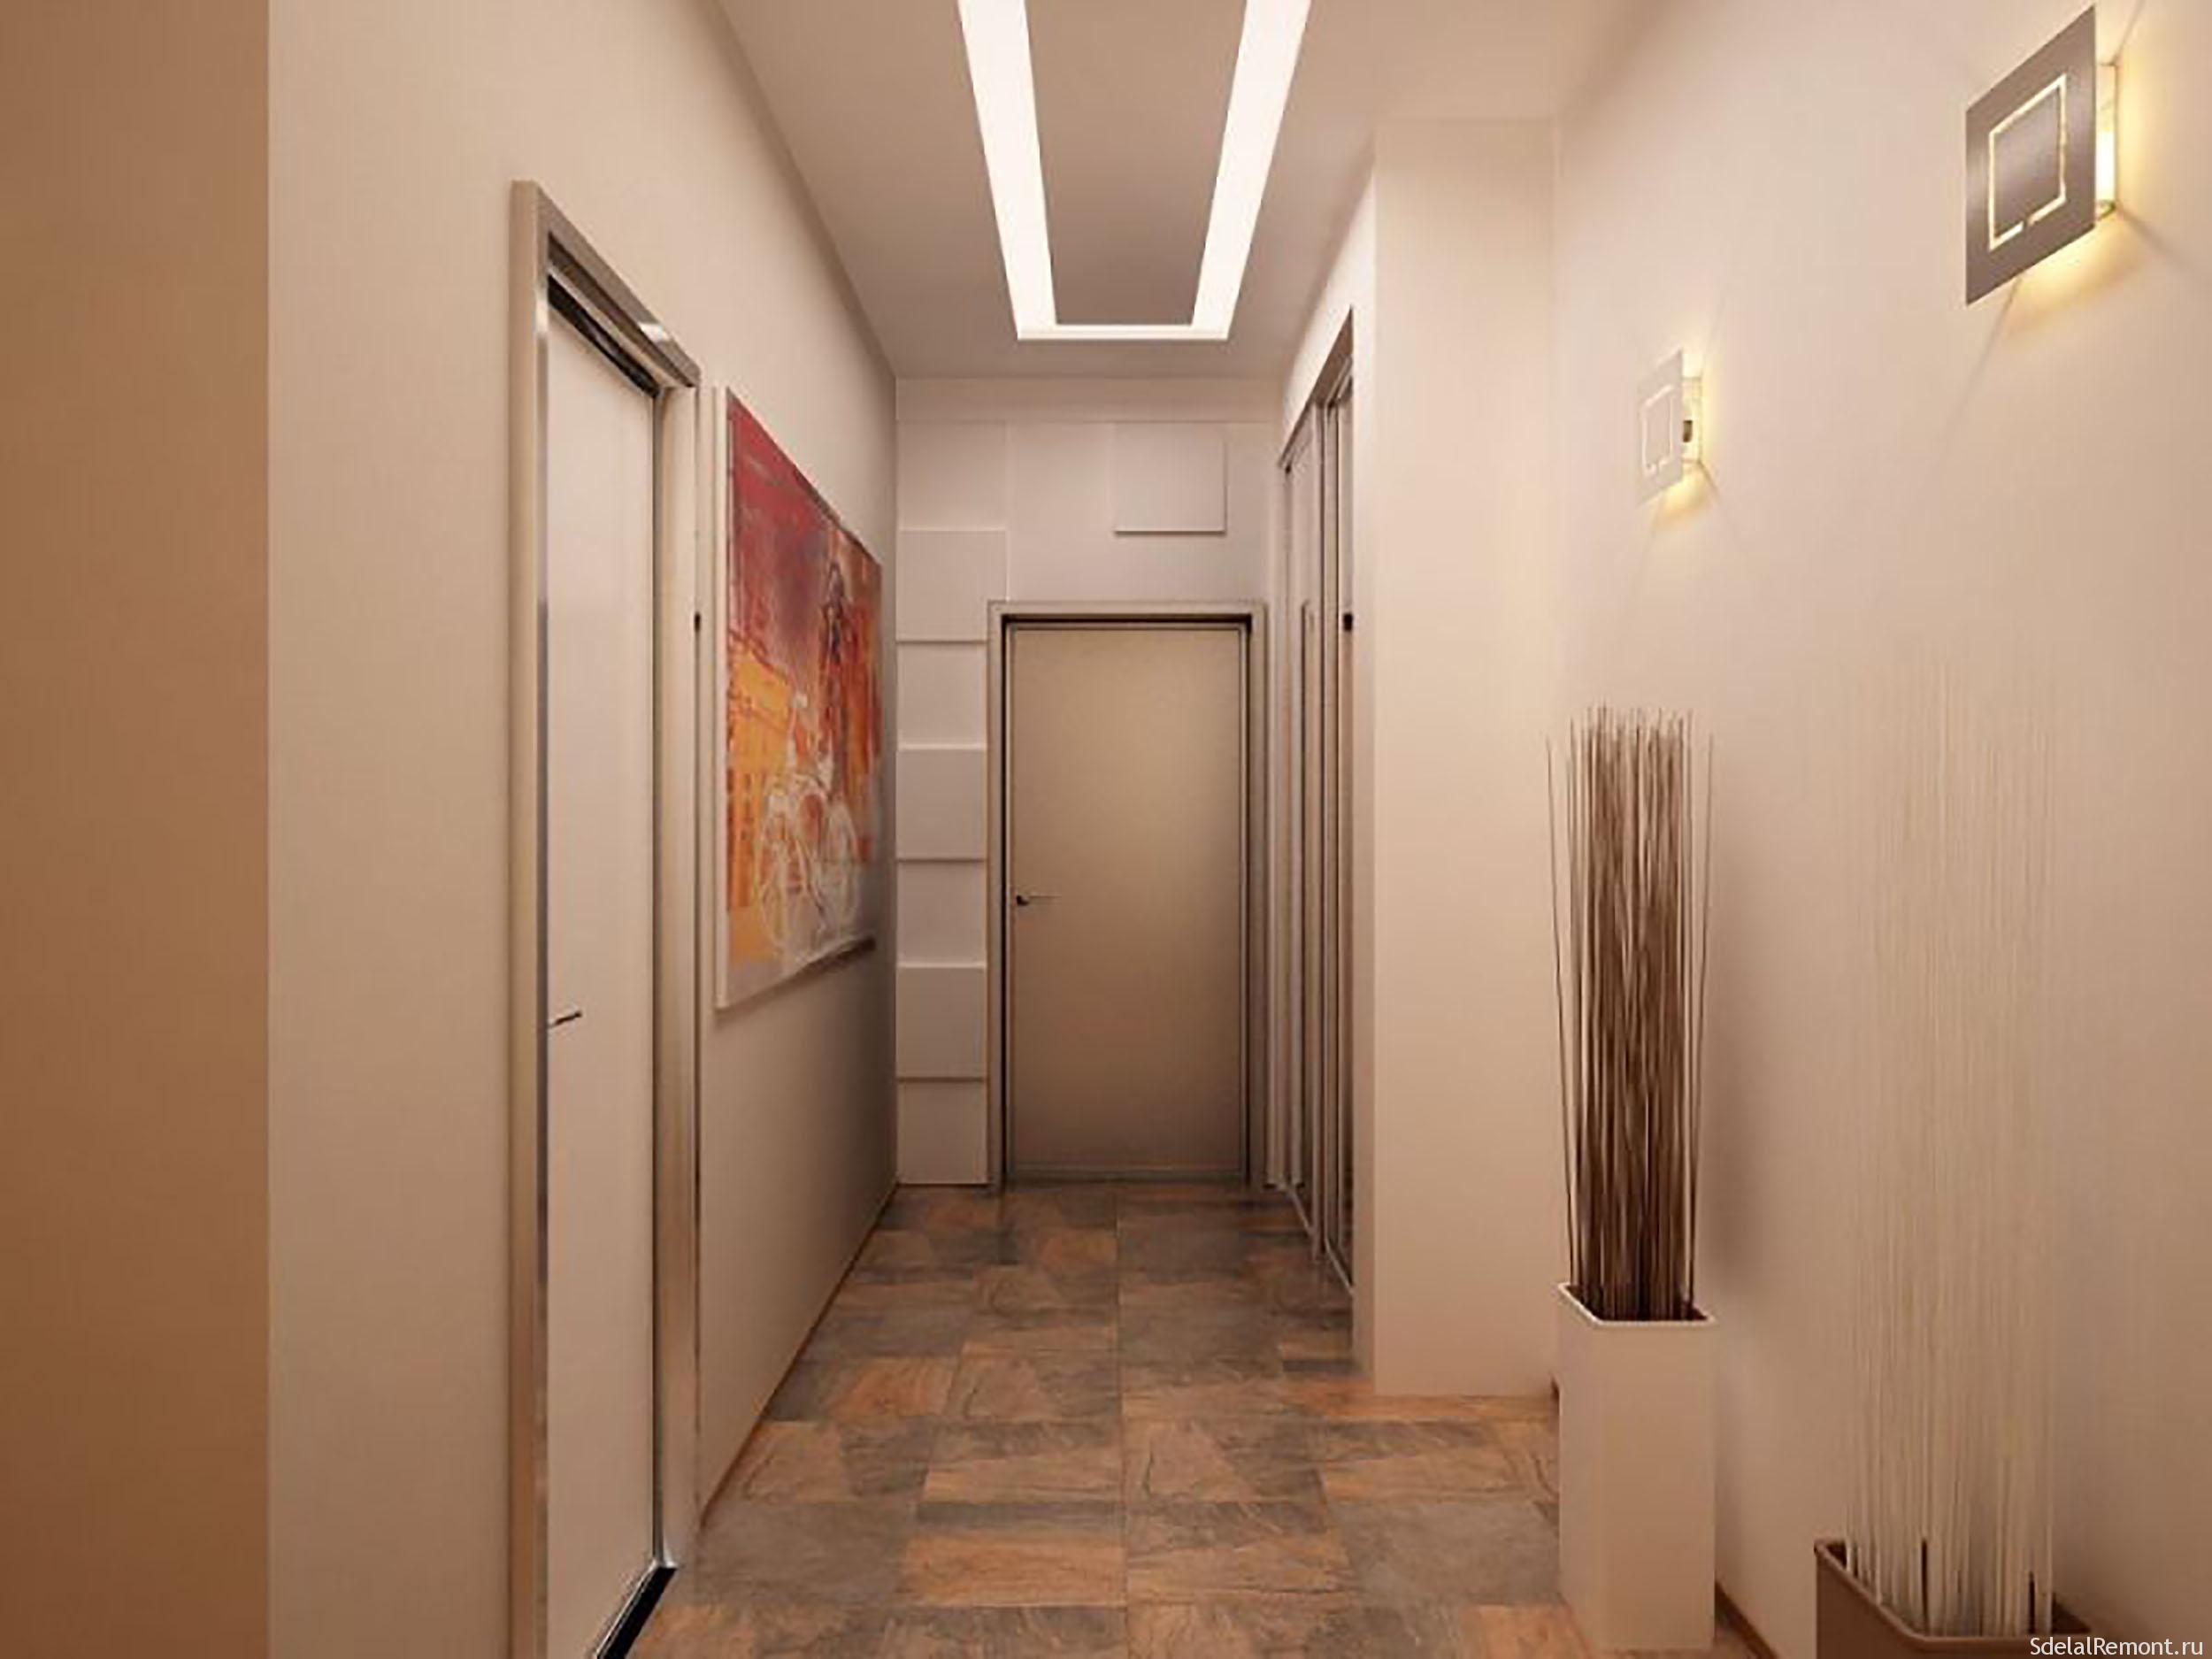 Дизайн потолка в коридоре + фото: потолки из гипсокартона и натяжн�ые